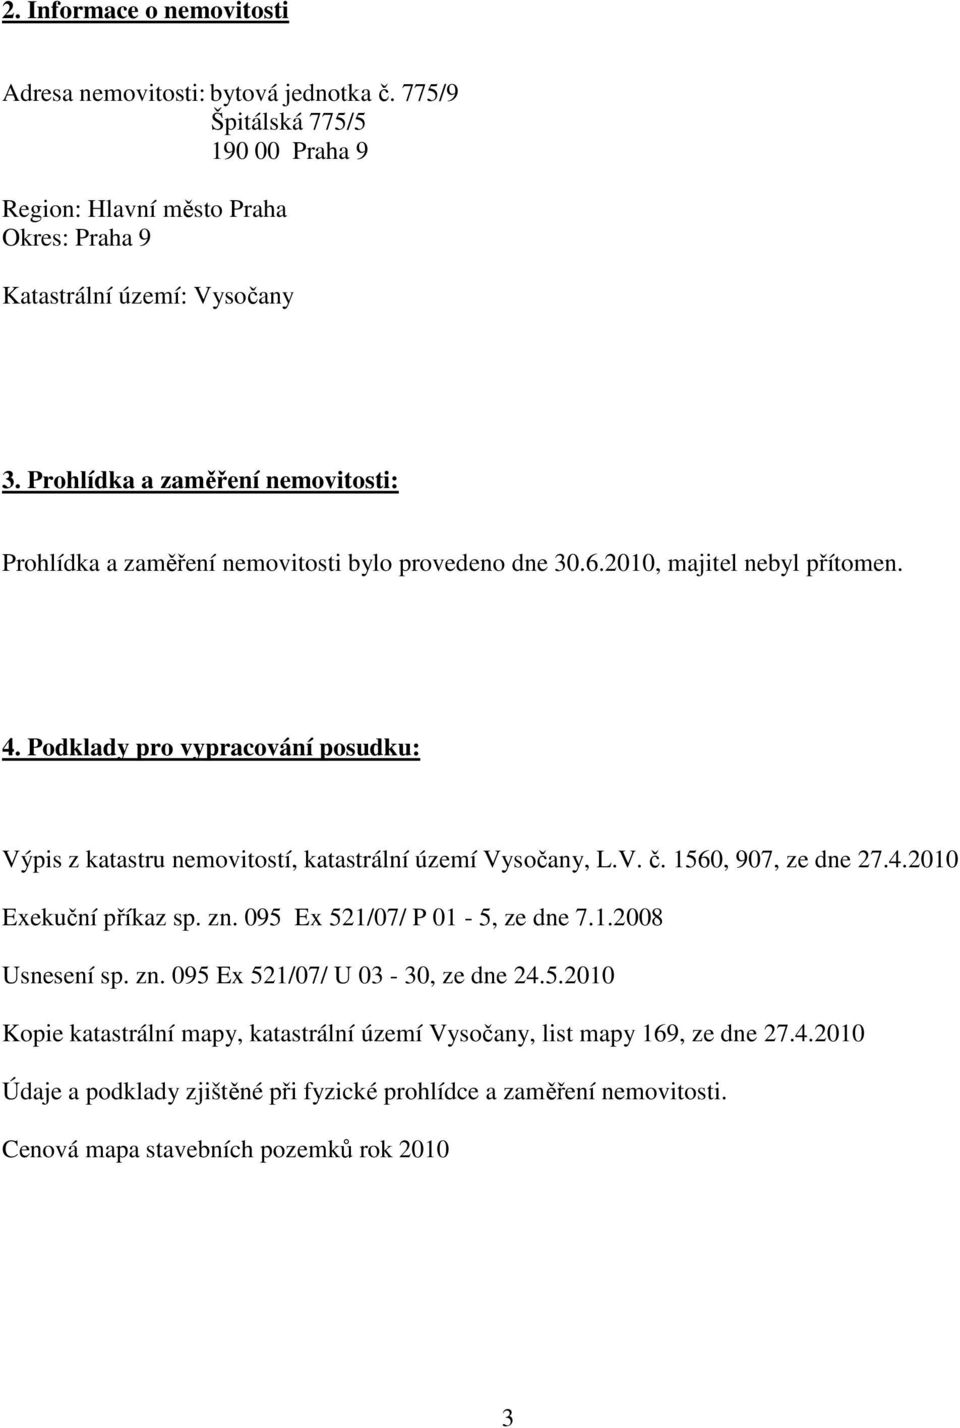 Podklady pro vypracování posudku: Výpis z katastru nemovitostí, katastrální území Vysočany, L.V. č. 1560, 907, ze dne 27.4.2010 Exekuční příkaz sp. zn. 095 Ex 521/07/ P 01-5, ze dne 7.1.2008 Usnesení sp.